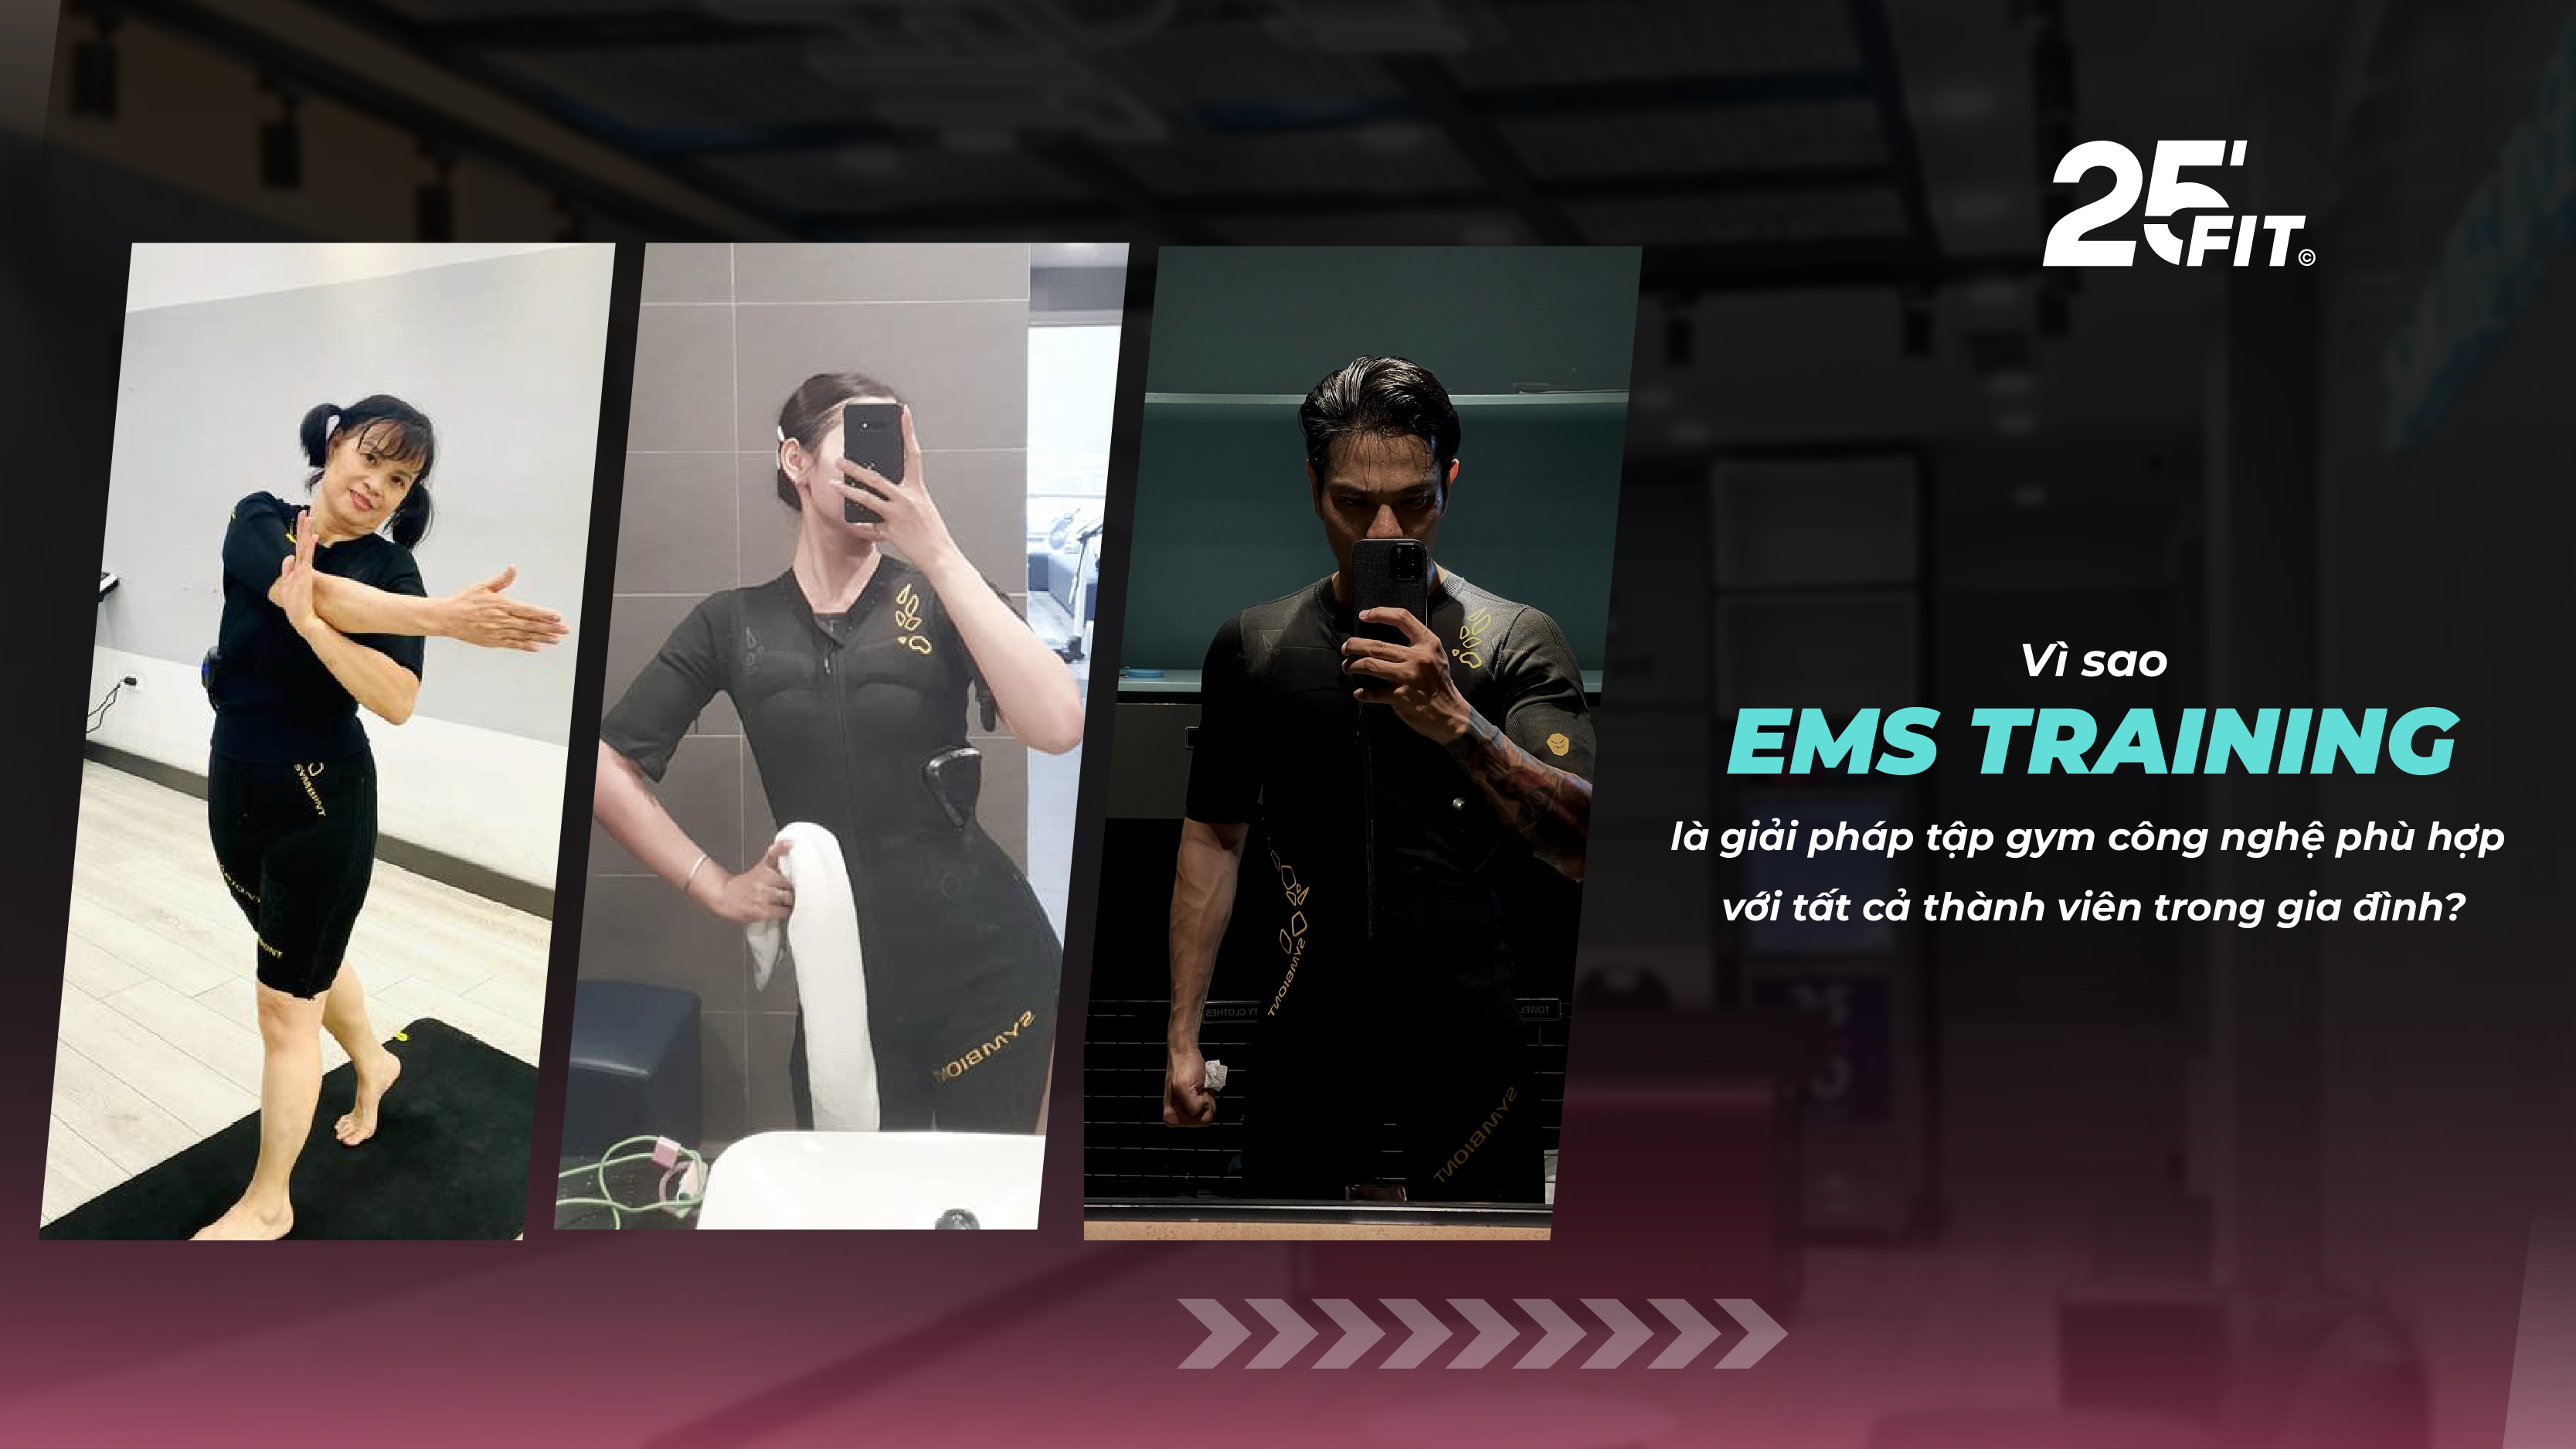 Vì sao EMS Training là giải pháp tập gym công nghệ cho cả gia đình?